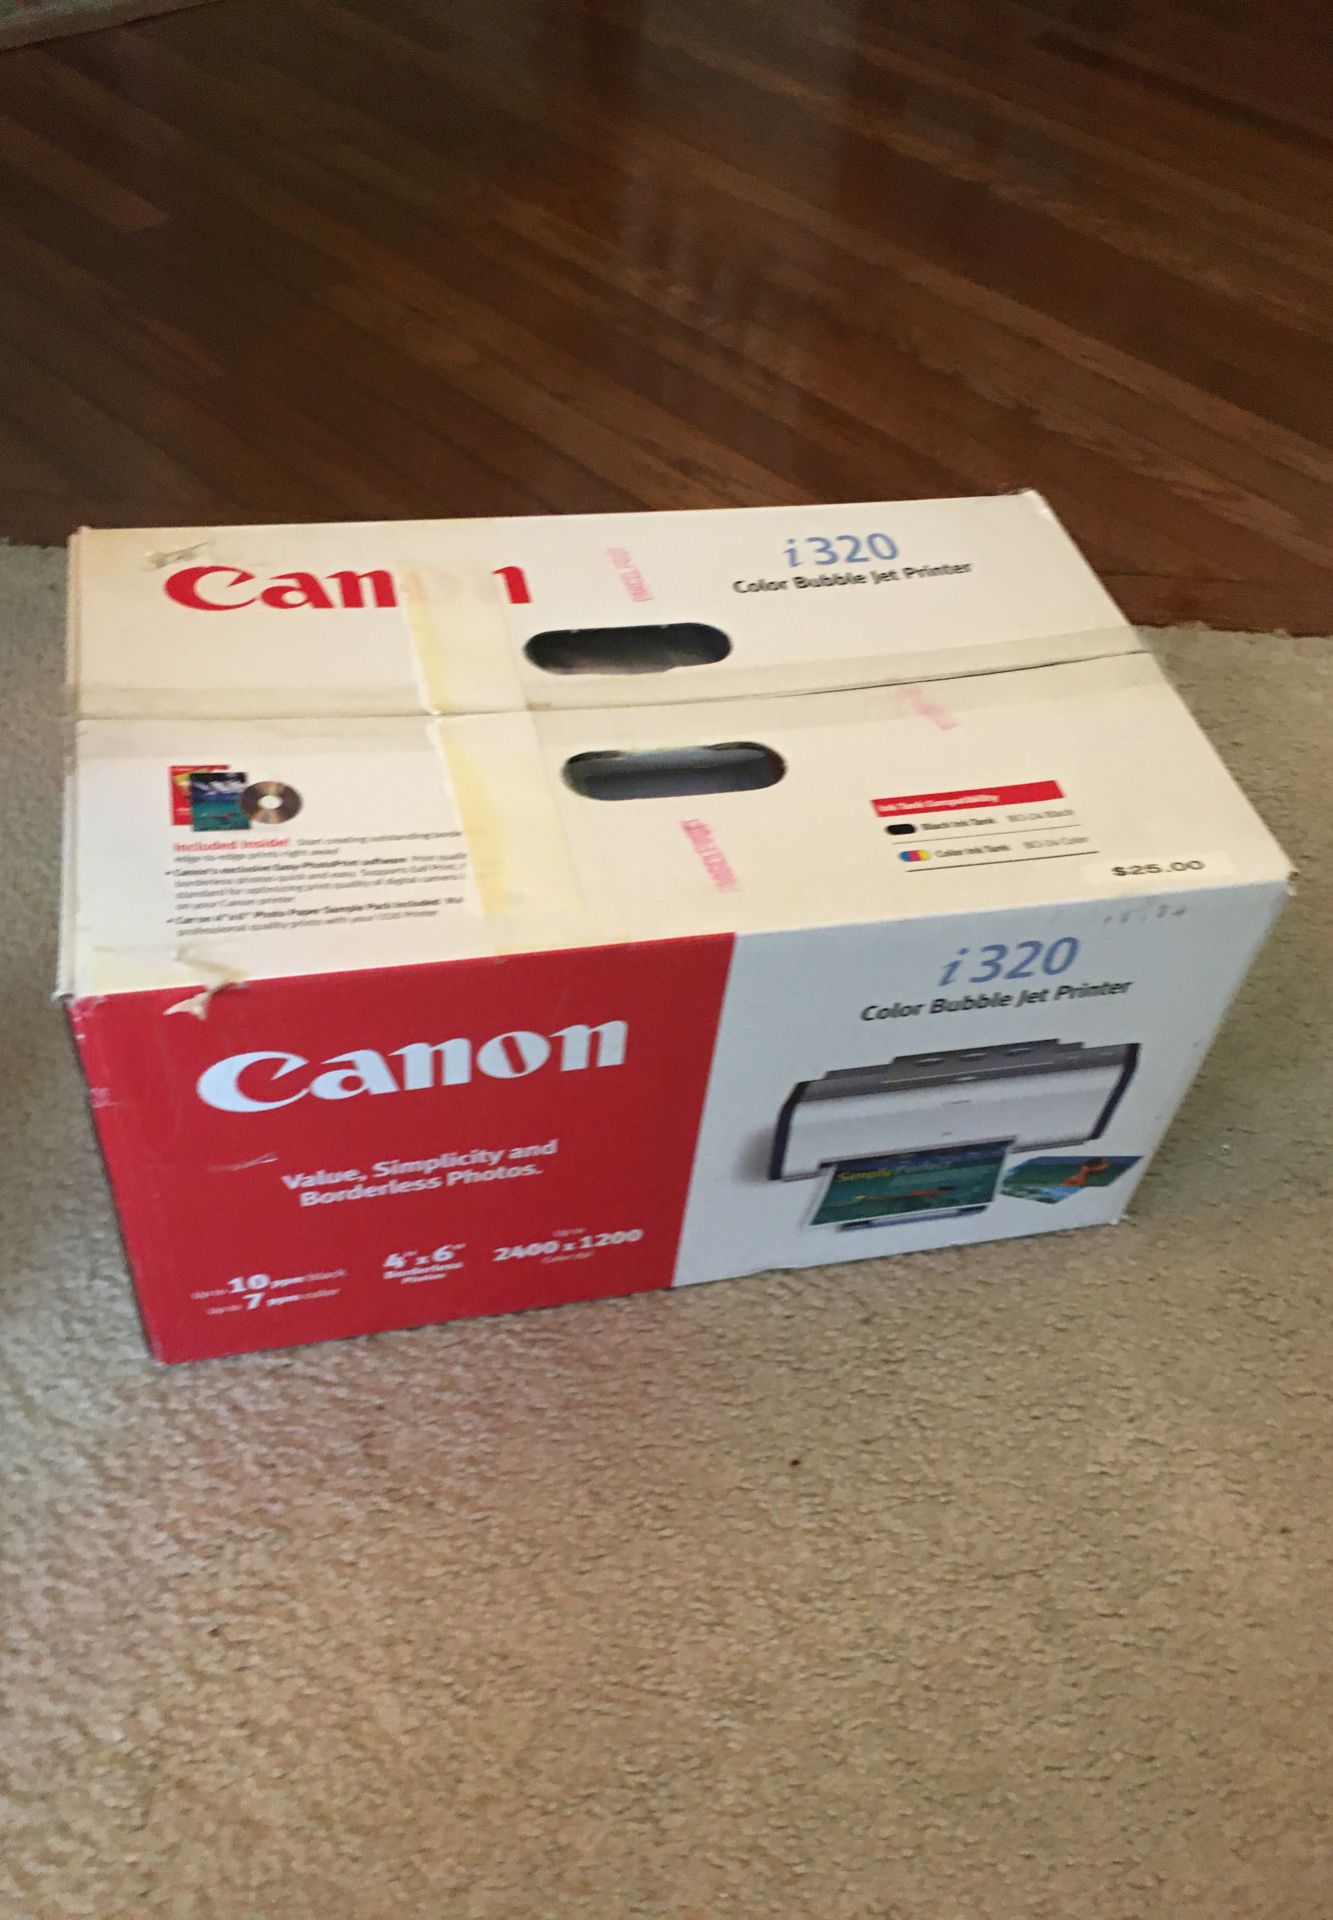 Canon color bubble jet printer, new in box